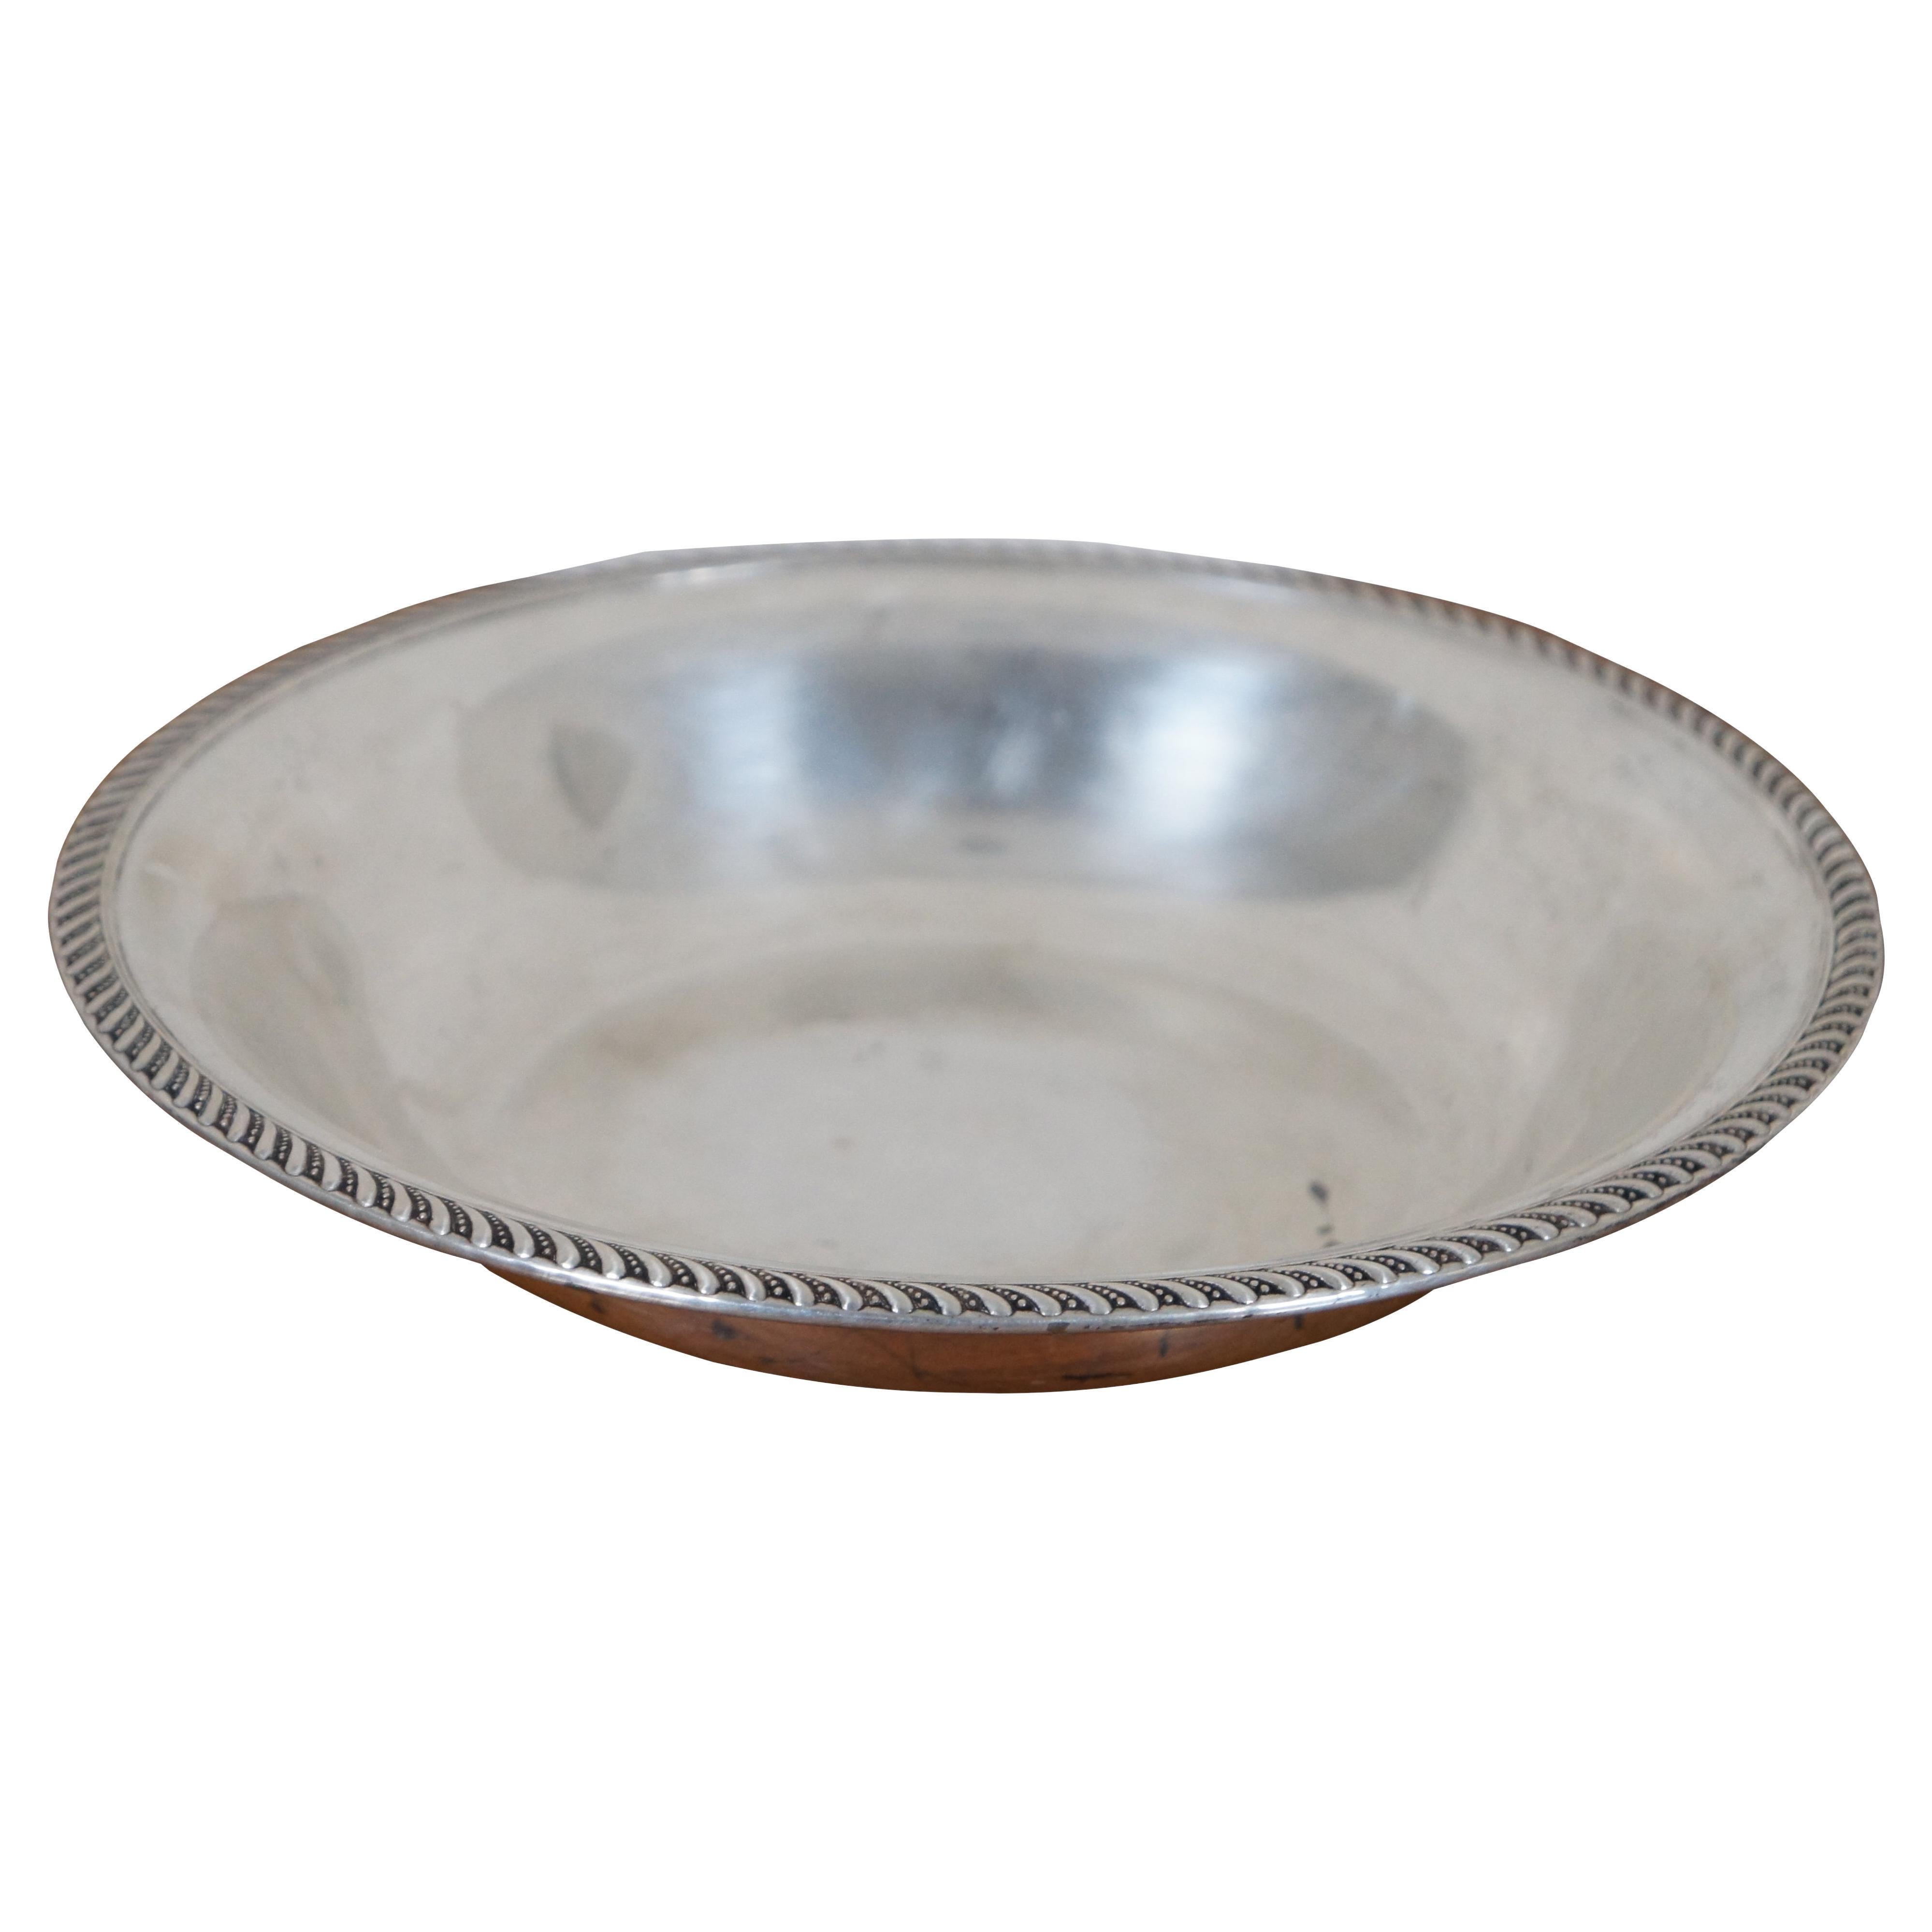 Vintage Preisner Psco Sterling Silver Serving Bowl Candy Dish Centerpiece 200g For Sale